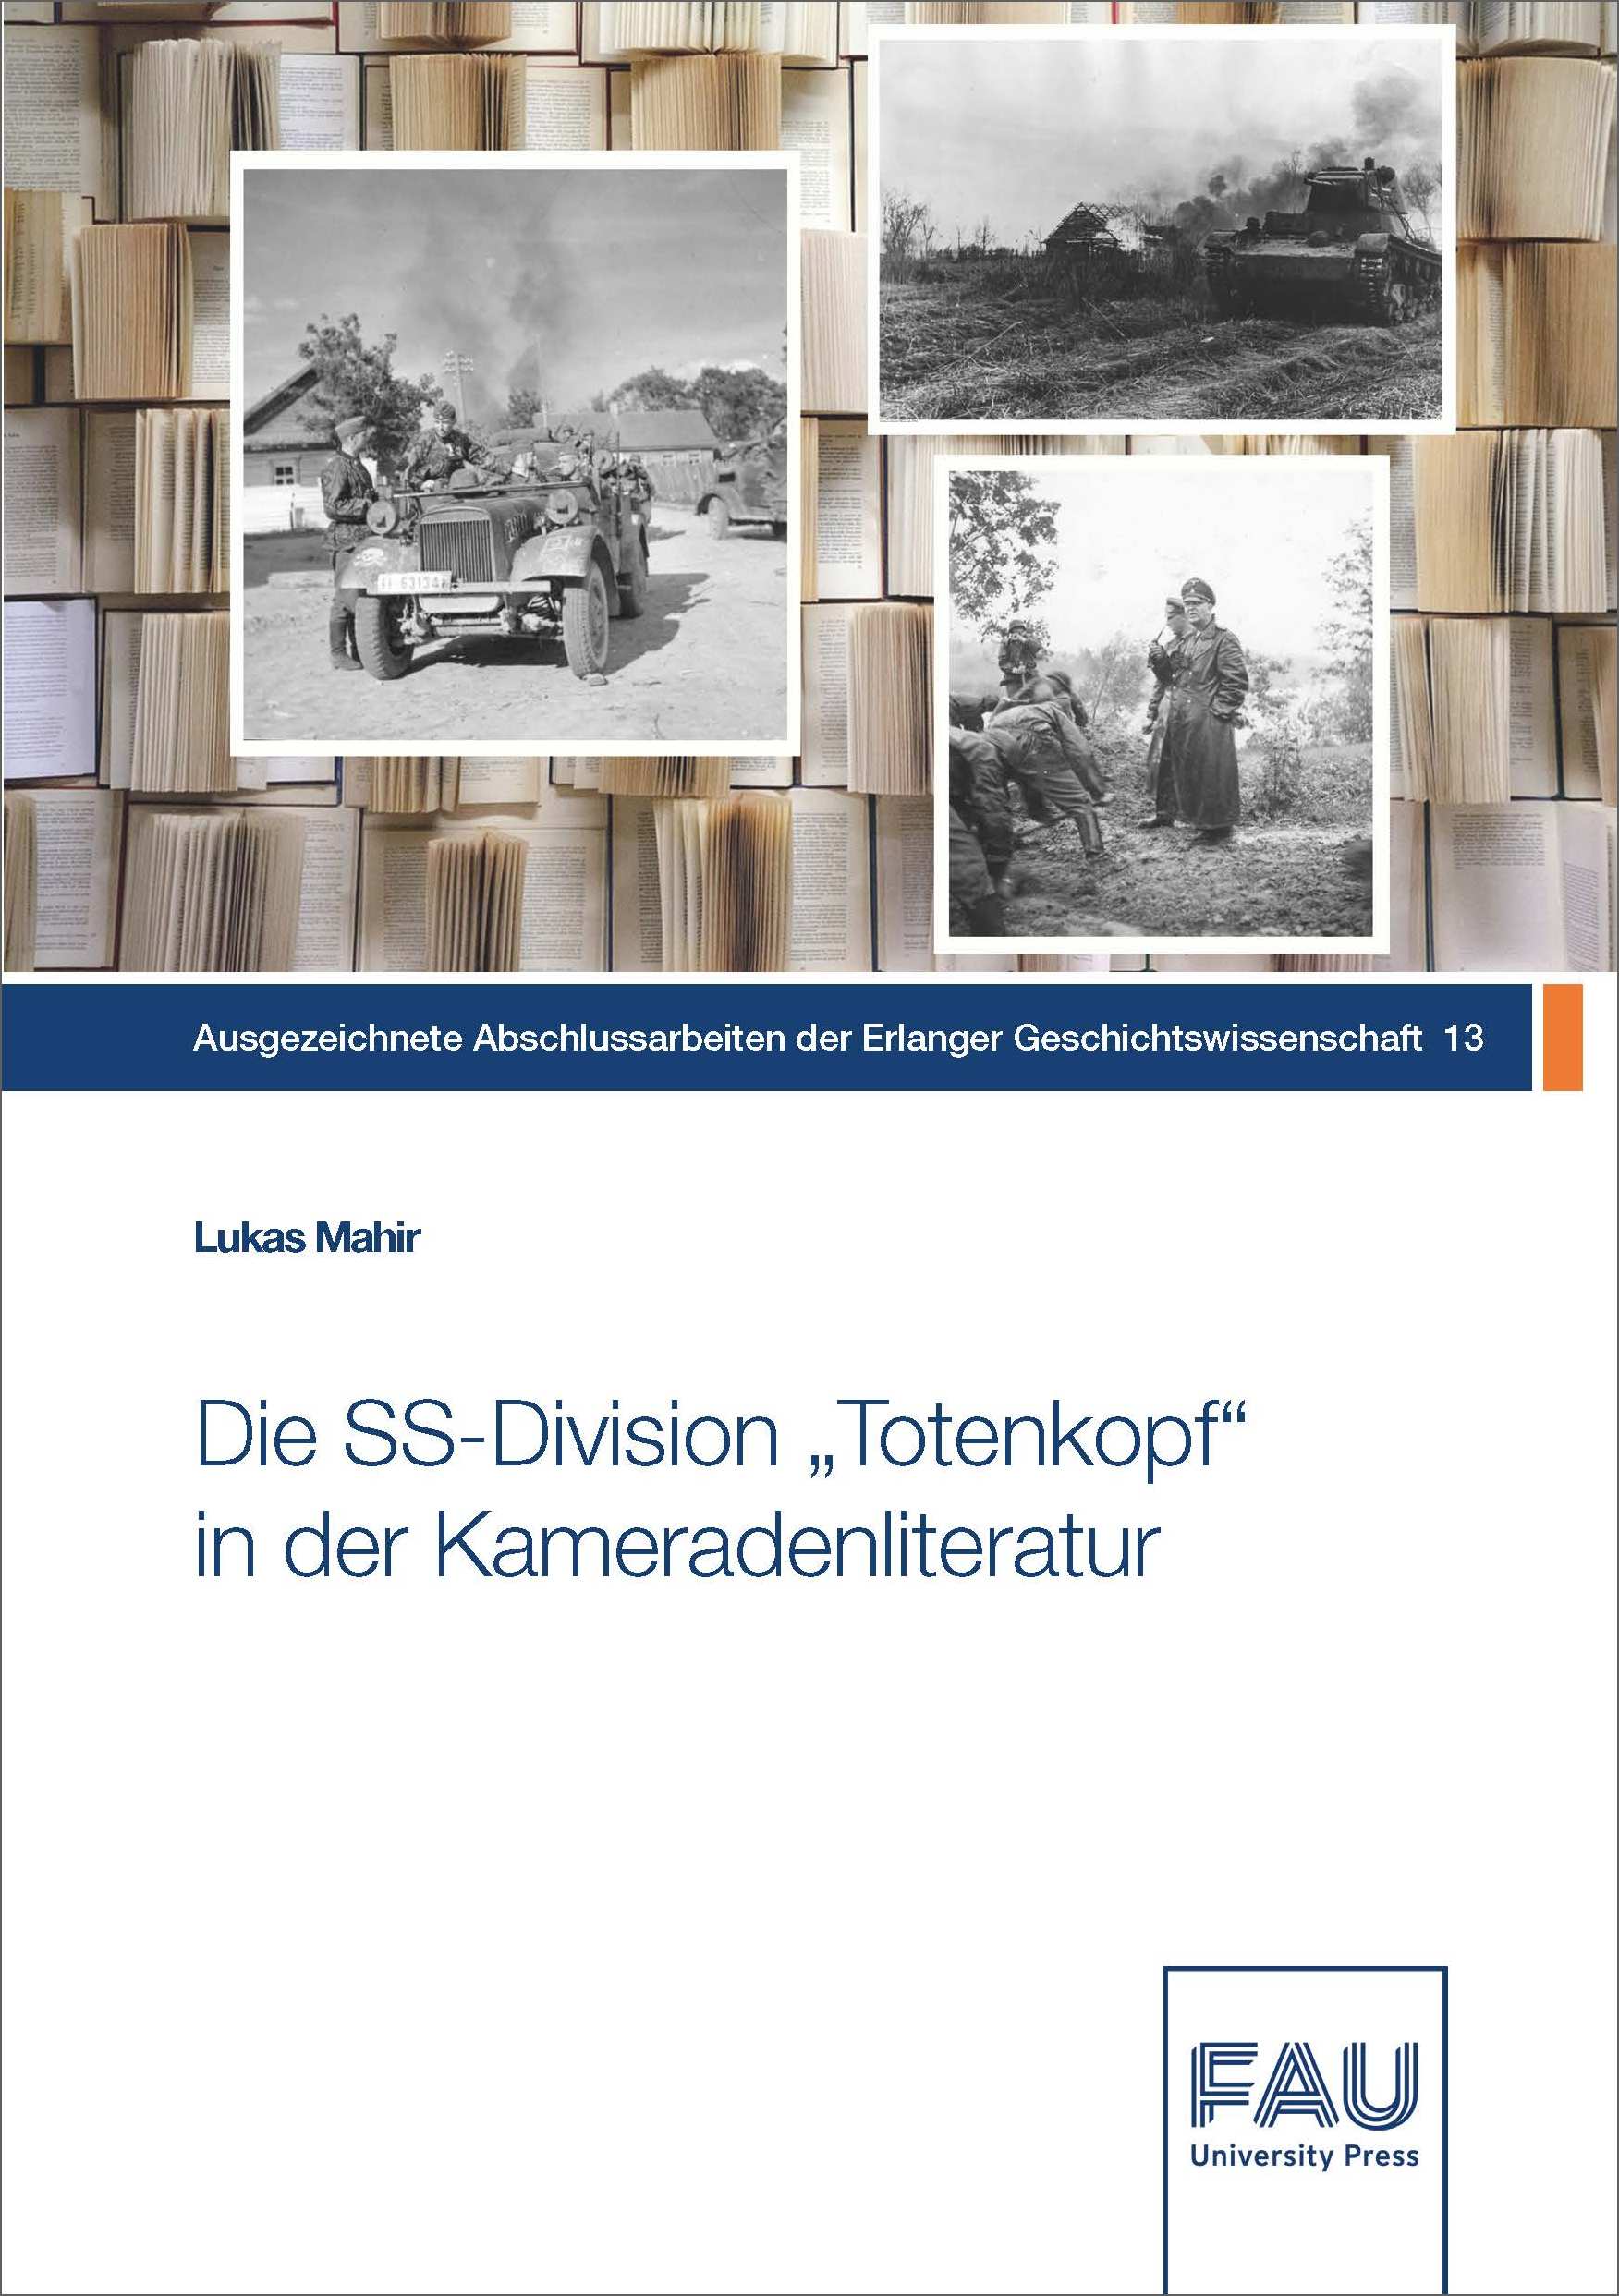 Die SS-Division „Totenkopf“ in der Kameradenliteratur nach 1945 zwischen Kriegserinnerungen, Apologetik und Wahrheit